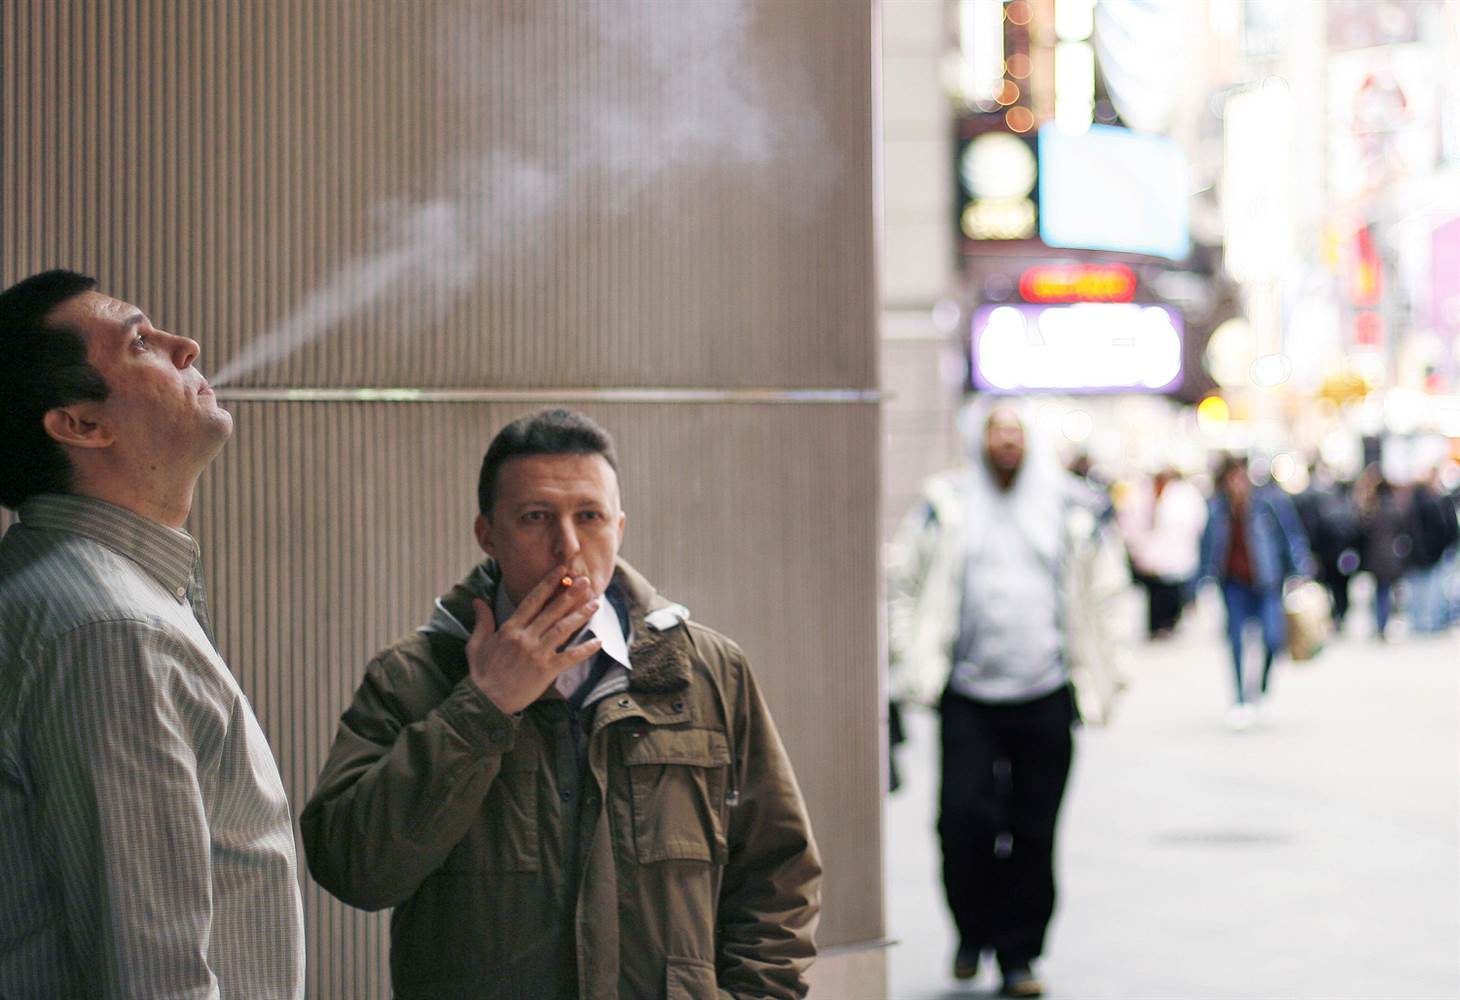 Курение на открытом воздухе. Курящий человек на улице. Люди в курилке. Мужчина курит ну улице. Человек с сигаретой на улице.